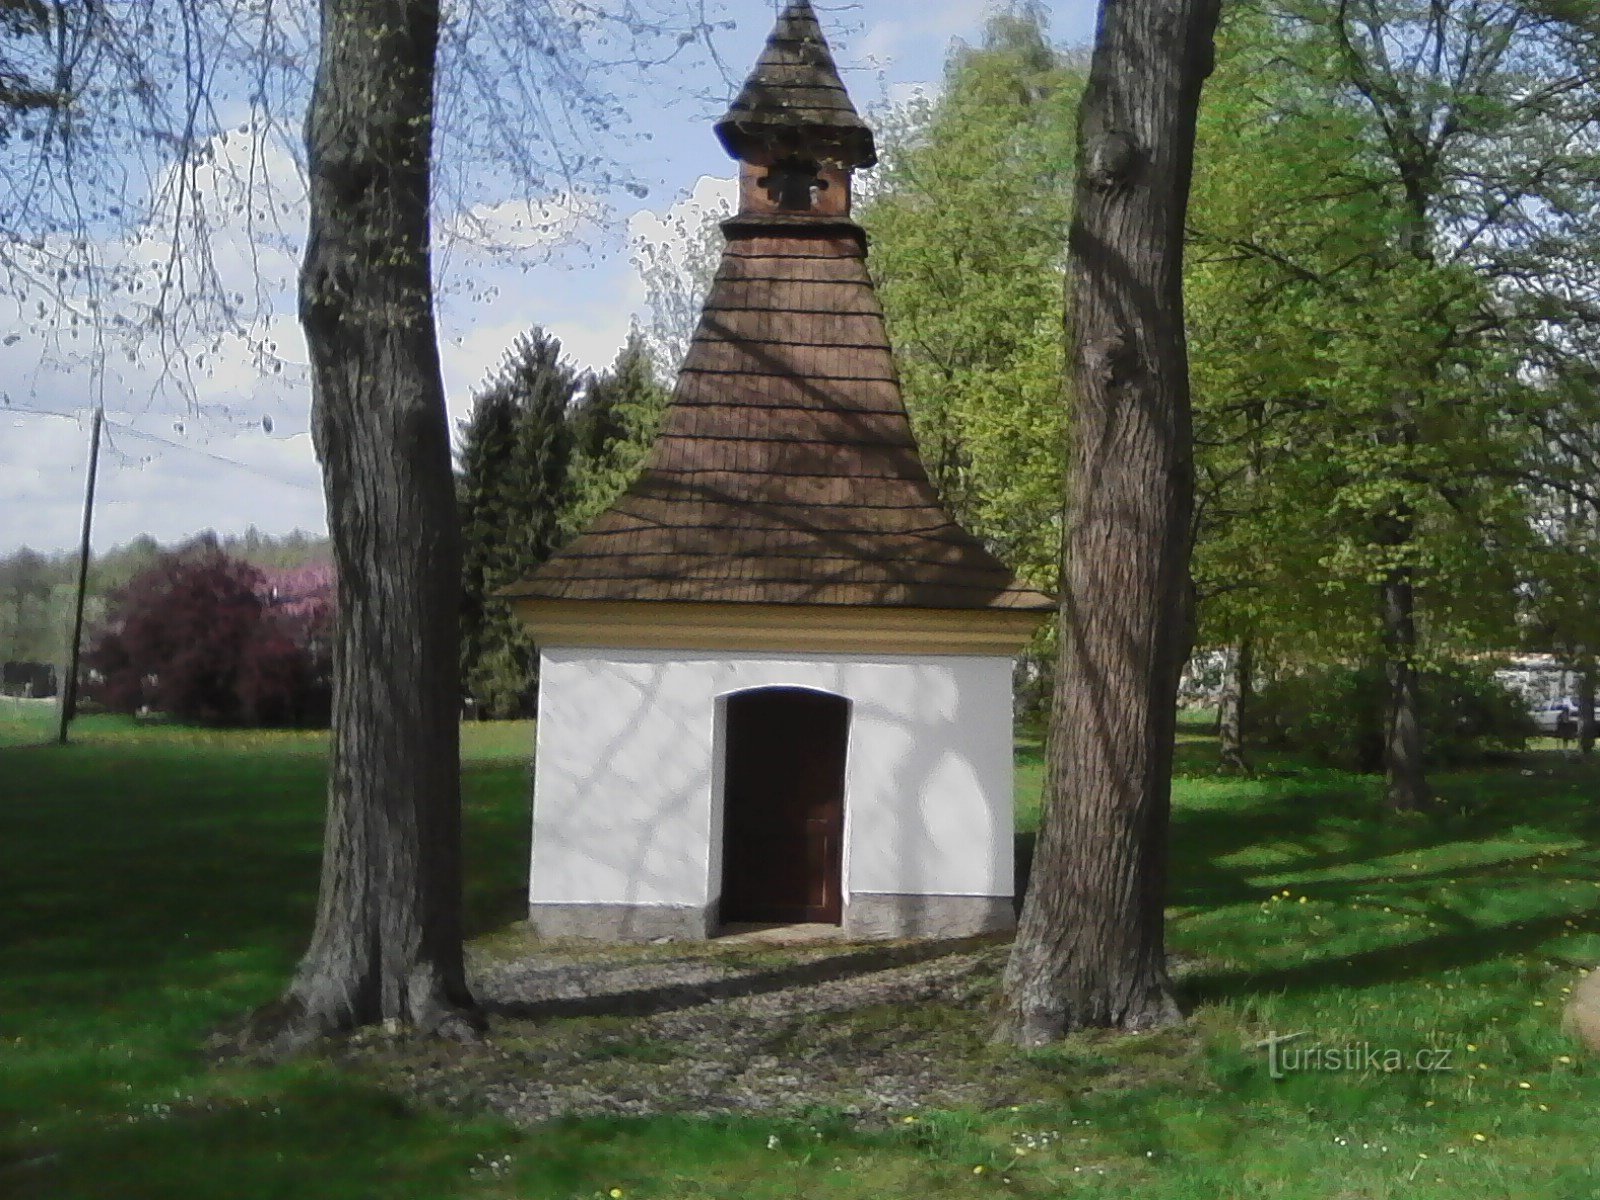 2. Capela de S. Ana em Leskovice. A primeira menção escrita da existência